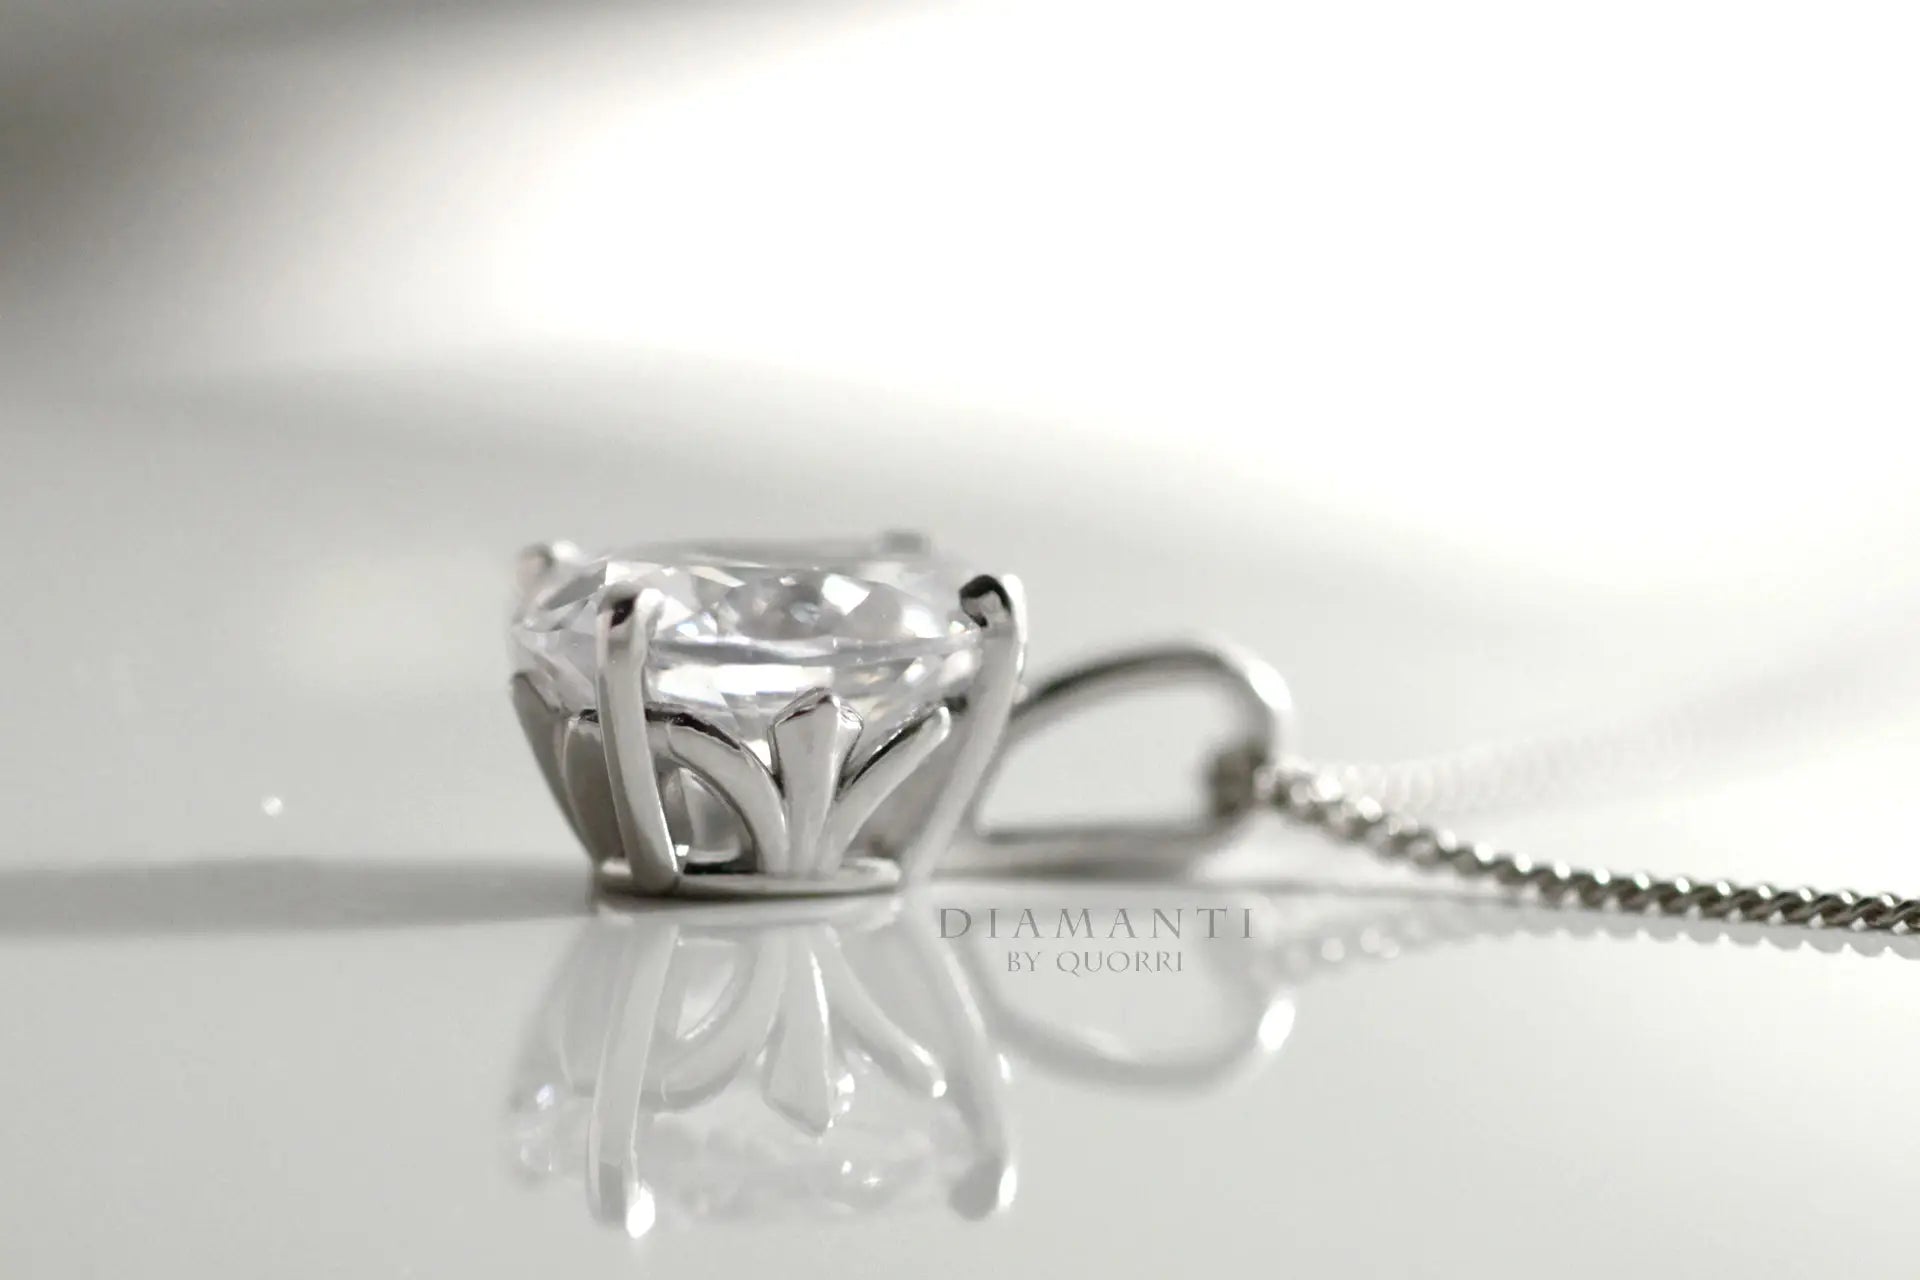 white gold designer 2 carat oval lab diamond pendant necklace Quorri